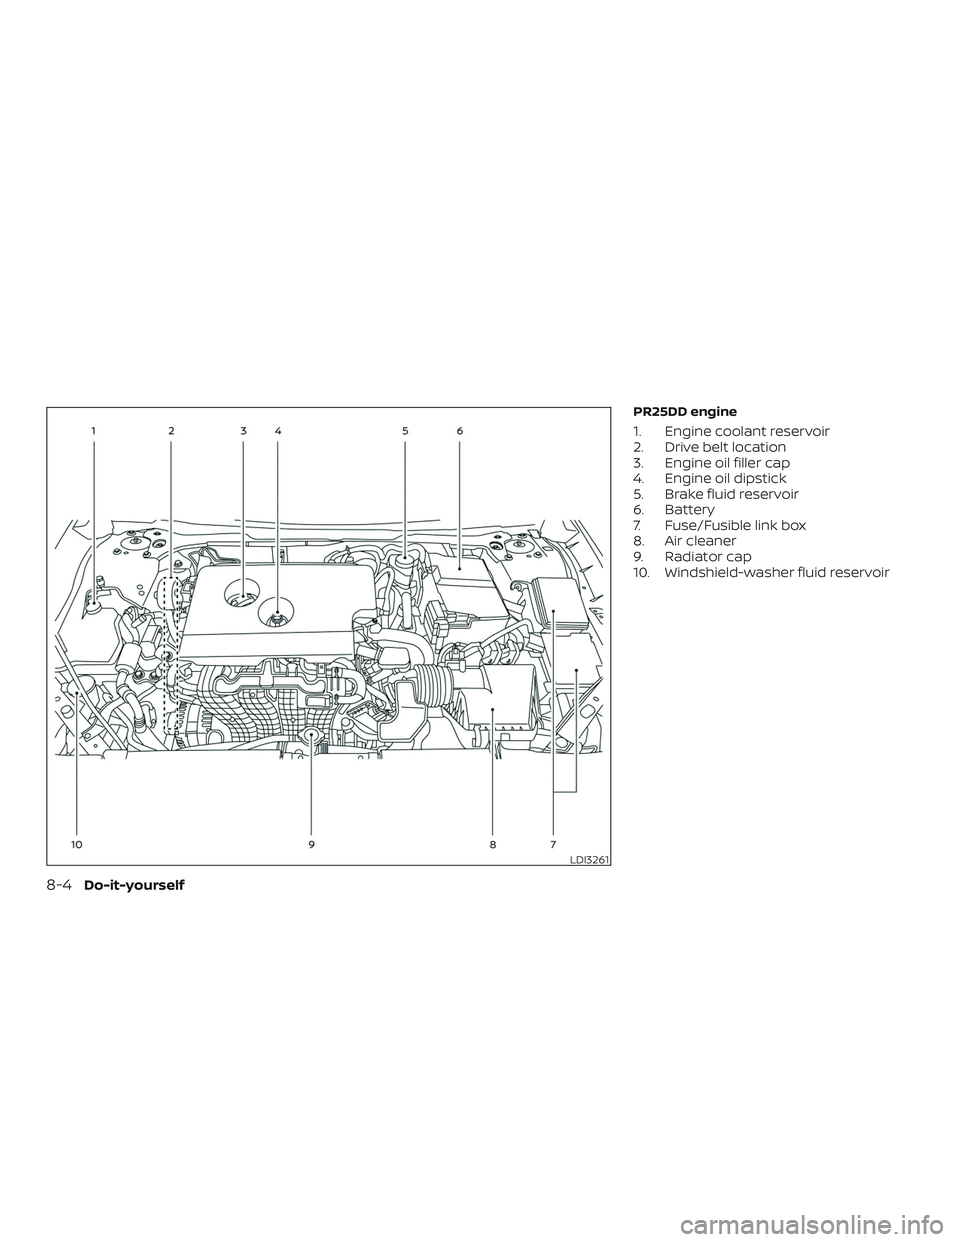 NISSAN ALTIMA 2020  Owner´s Manual PR25DD engine
1. Engine coolant reservoir
2. Drive belt location
3. Engine oil filler cap
4. Engine oil dipstick
5. Brake fluid reservoir
6. Battery
7. Fuse/Fusible link box
8. Air cleaner
9. Radiator